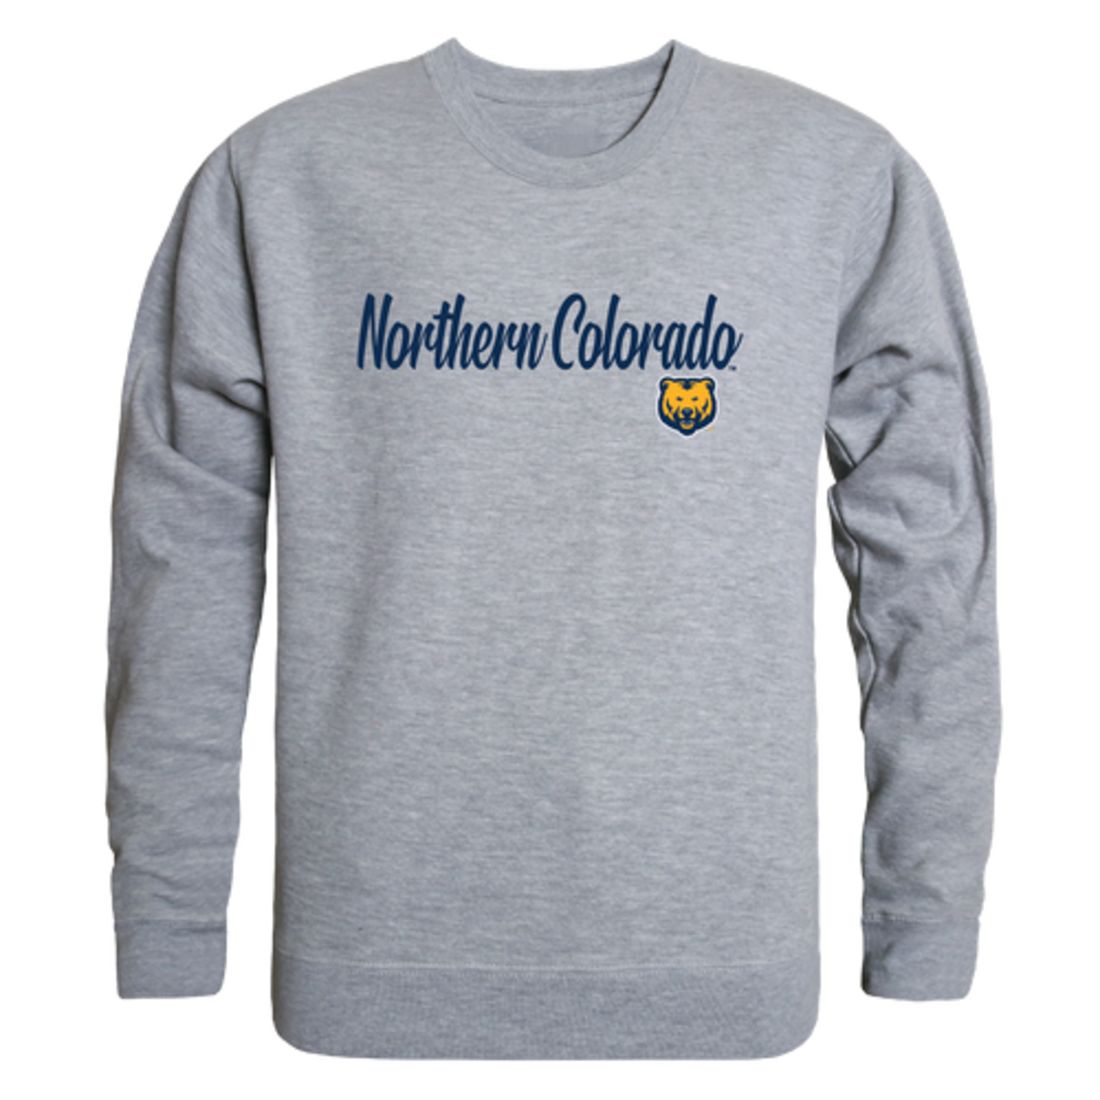 University of Northern Colorado Bears Script Crewneck Pullover Sweatshirt Sweater Black-Campus-Wardrobe